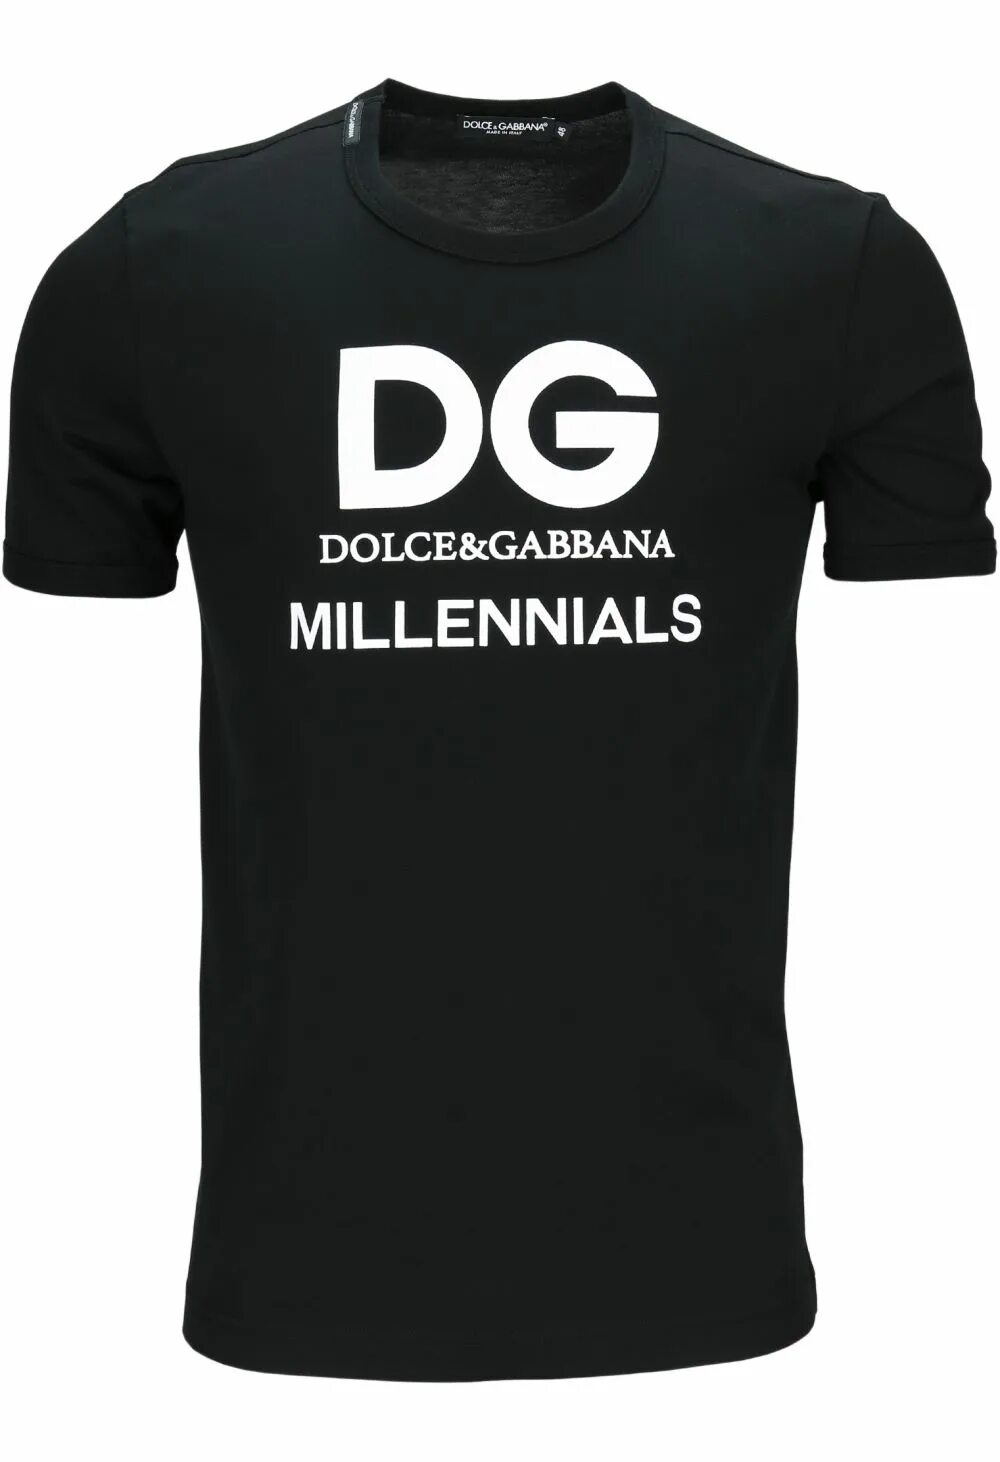 Dolce спб. Dolce Gabbana DG Millennials. Dolce Gabbana Millennials. Millennials d&g. Футболки мужские Дольче Габбана модель 2017.